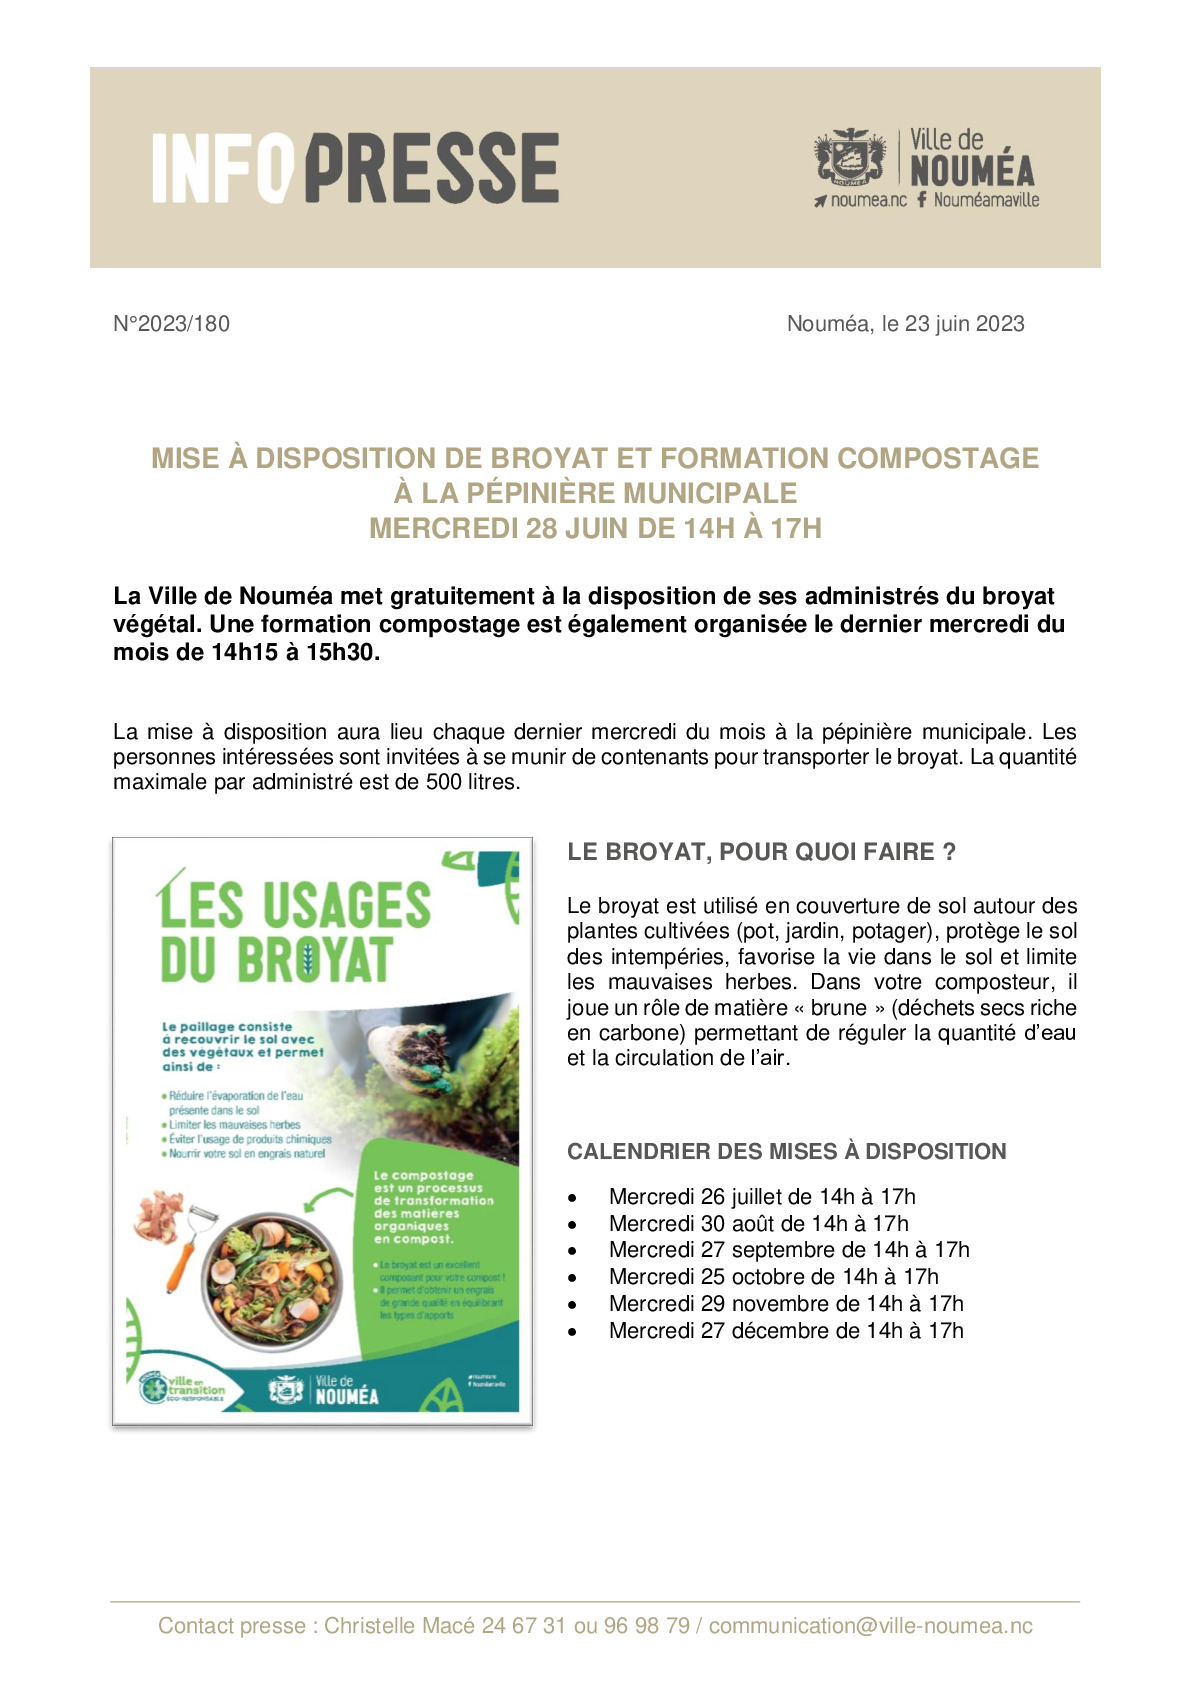 IP 180 Mise a disposition mensuelle de broyat et formation compostage.pdf